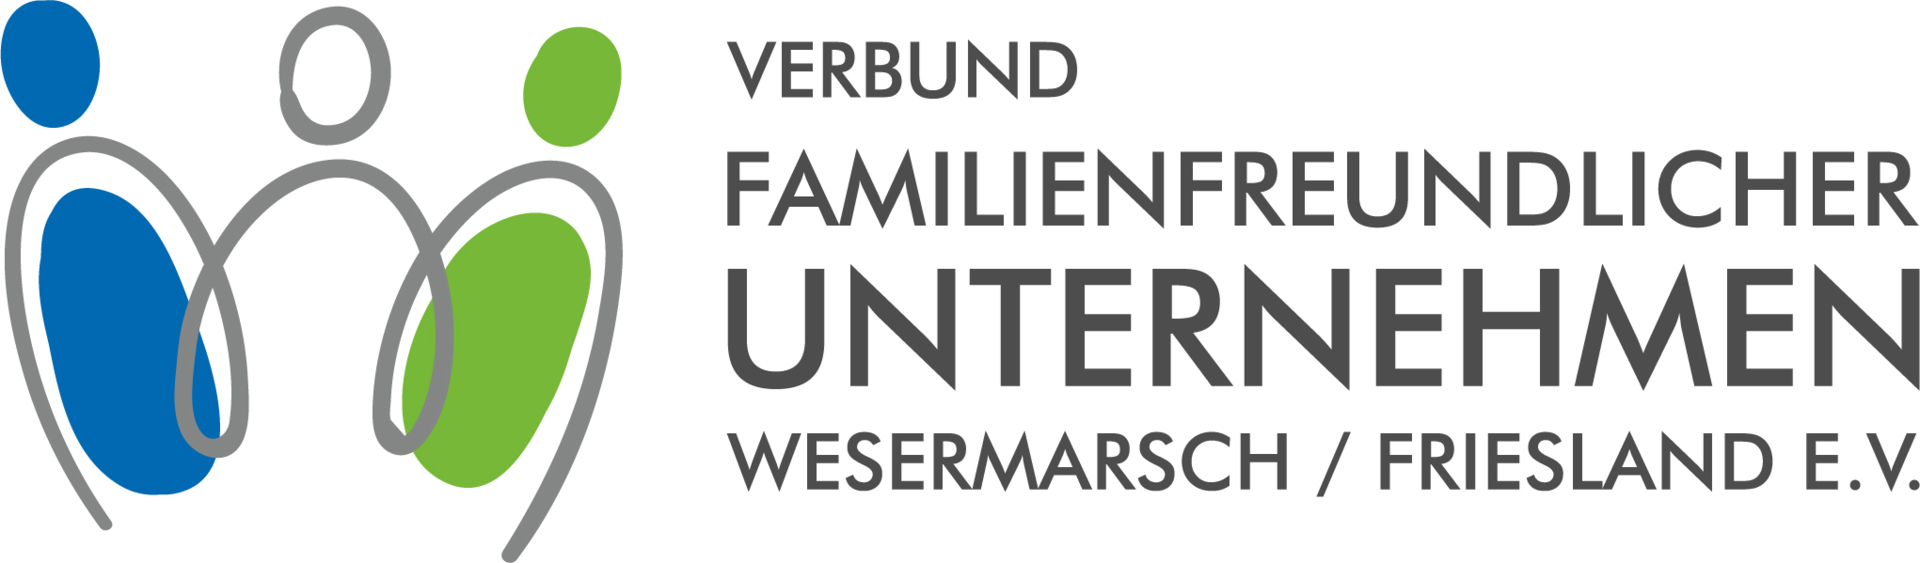 Verbund Wesermarsch Friesland Logo